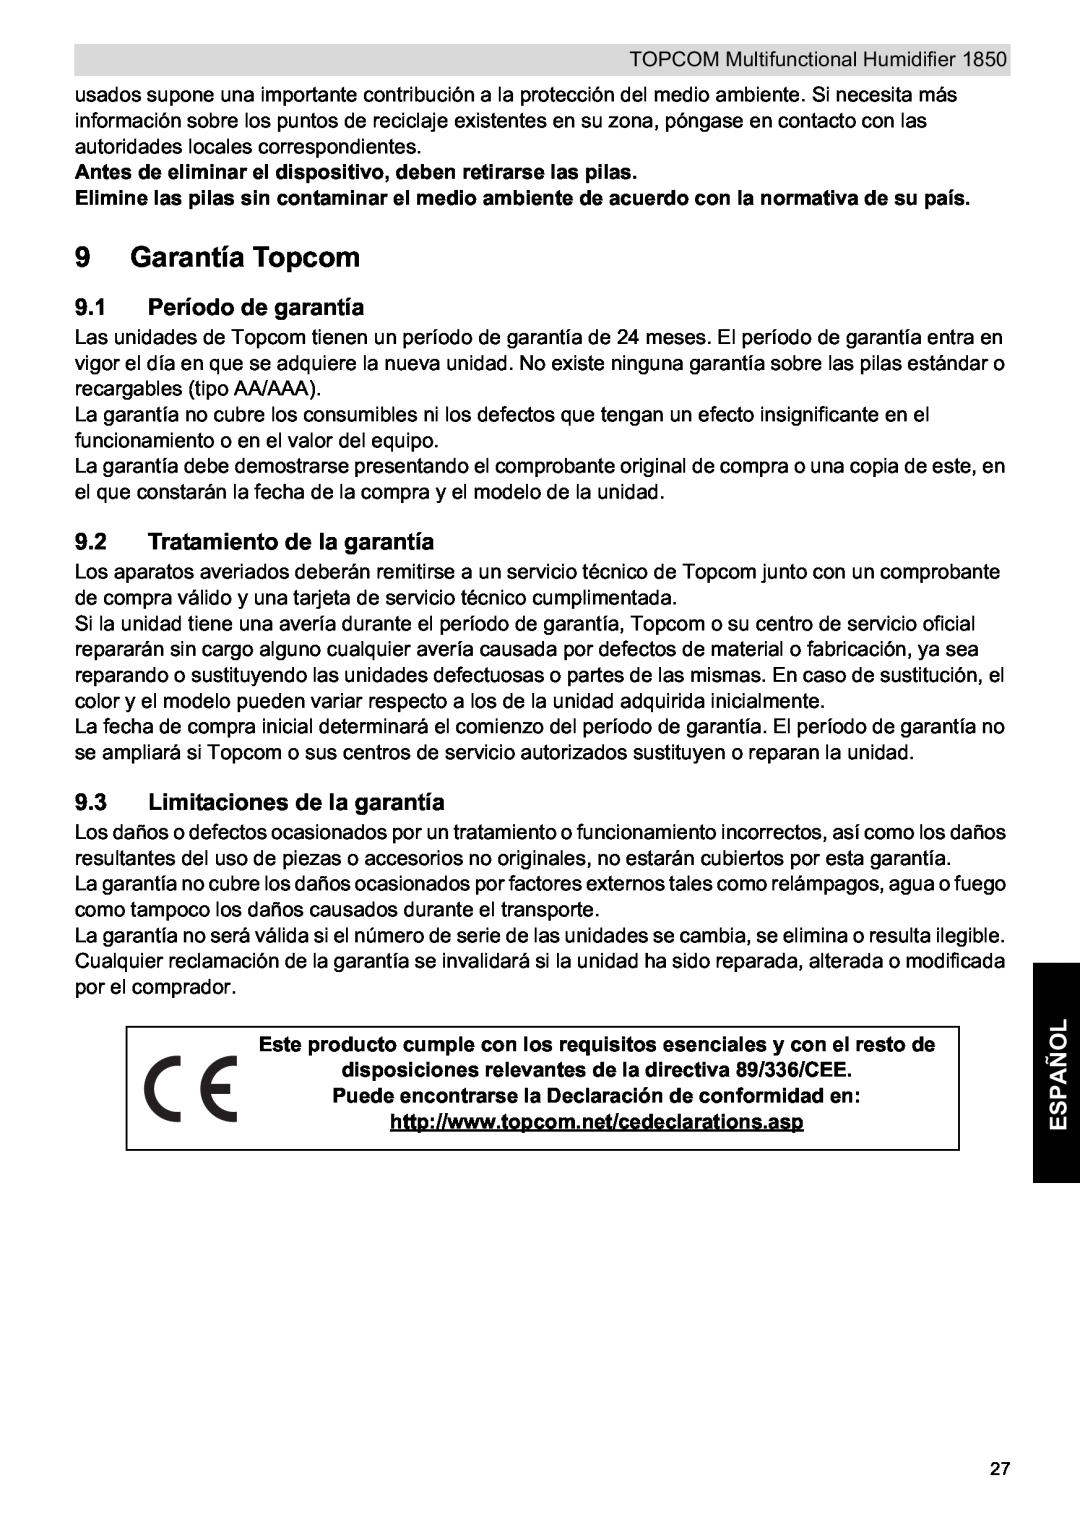 Topcom 1850 Garantía Topcom, 9.1 Período de garantía, Tratamiento de la garantía, Limitaciones de la garantía, Español 